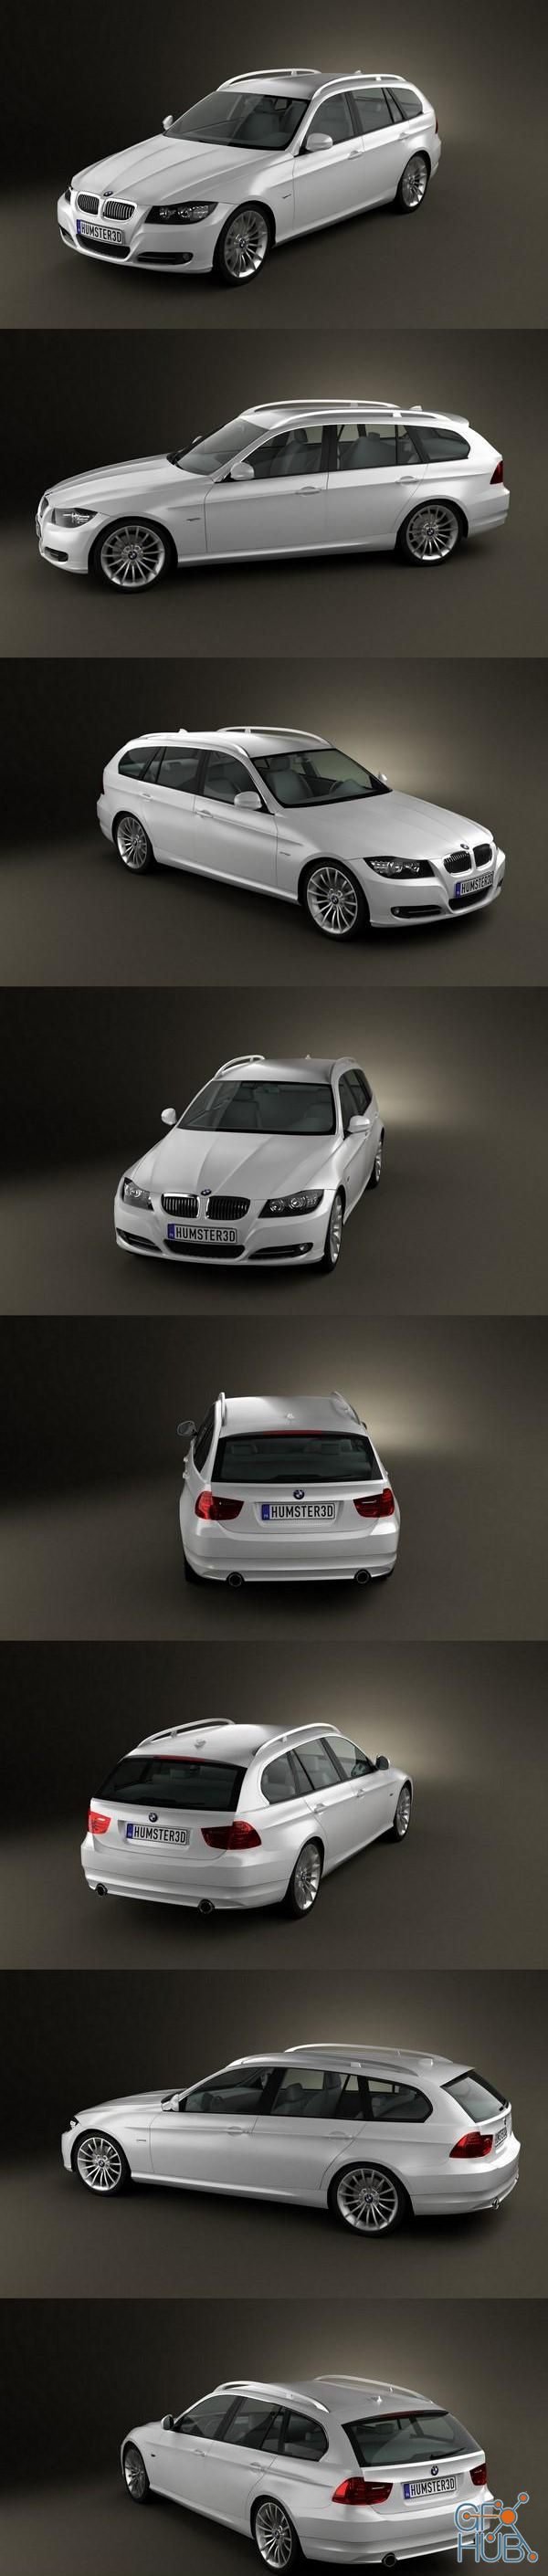 BMW 3 series Touring 2011